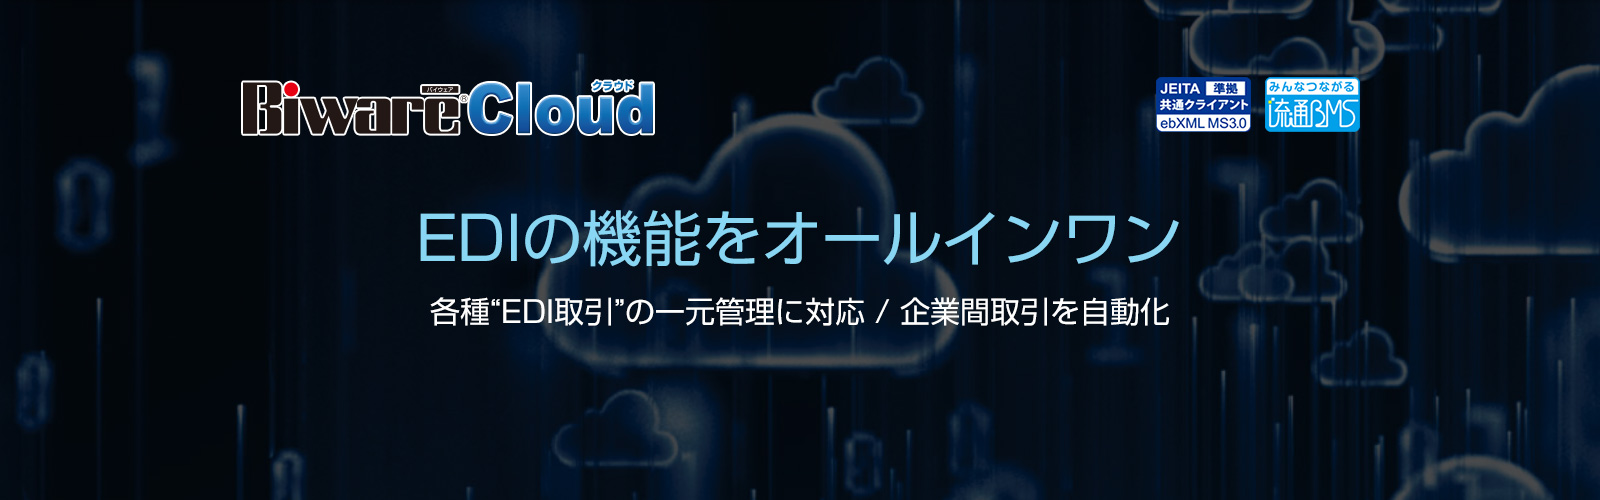 Biware Cloud